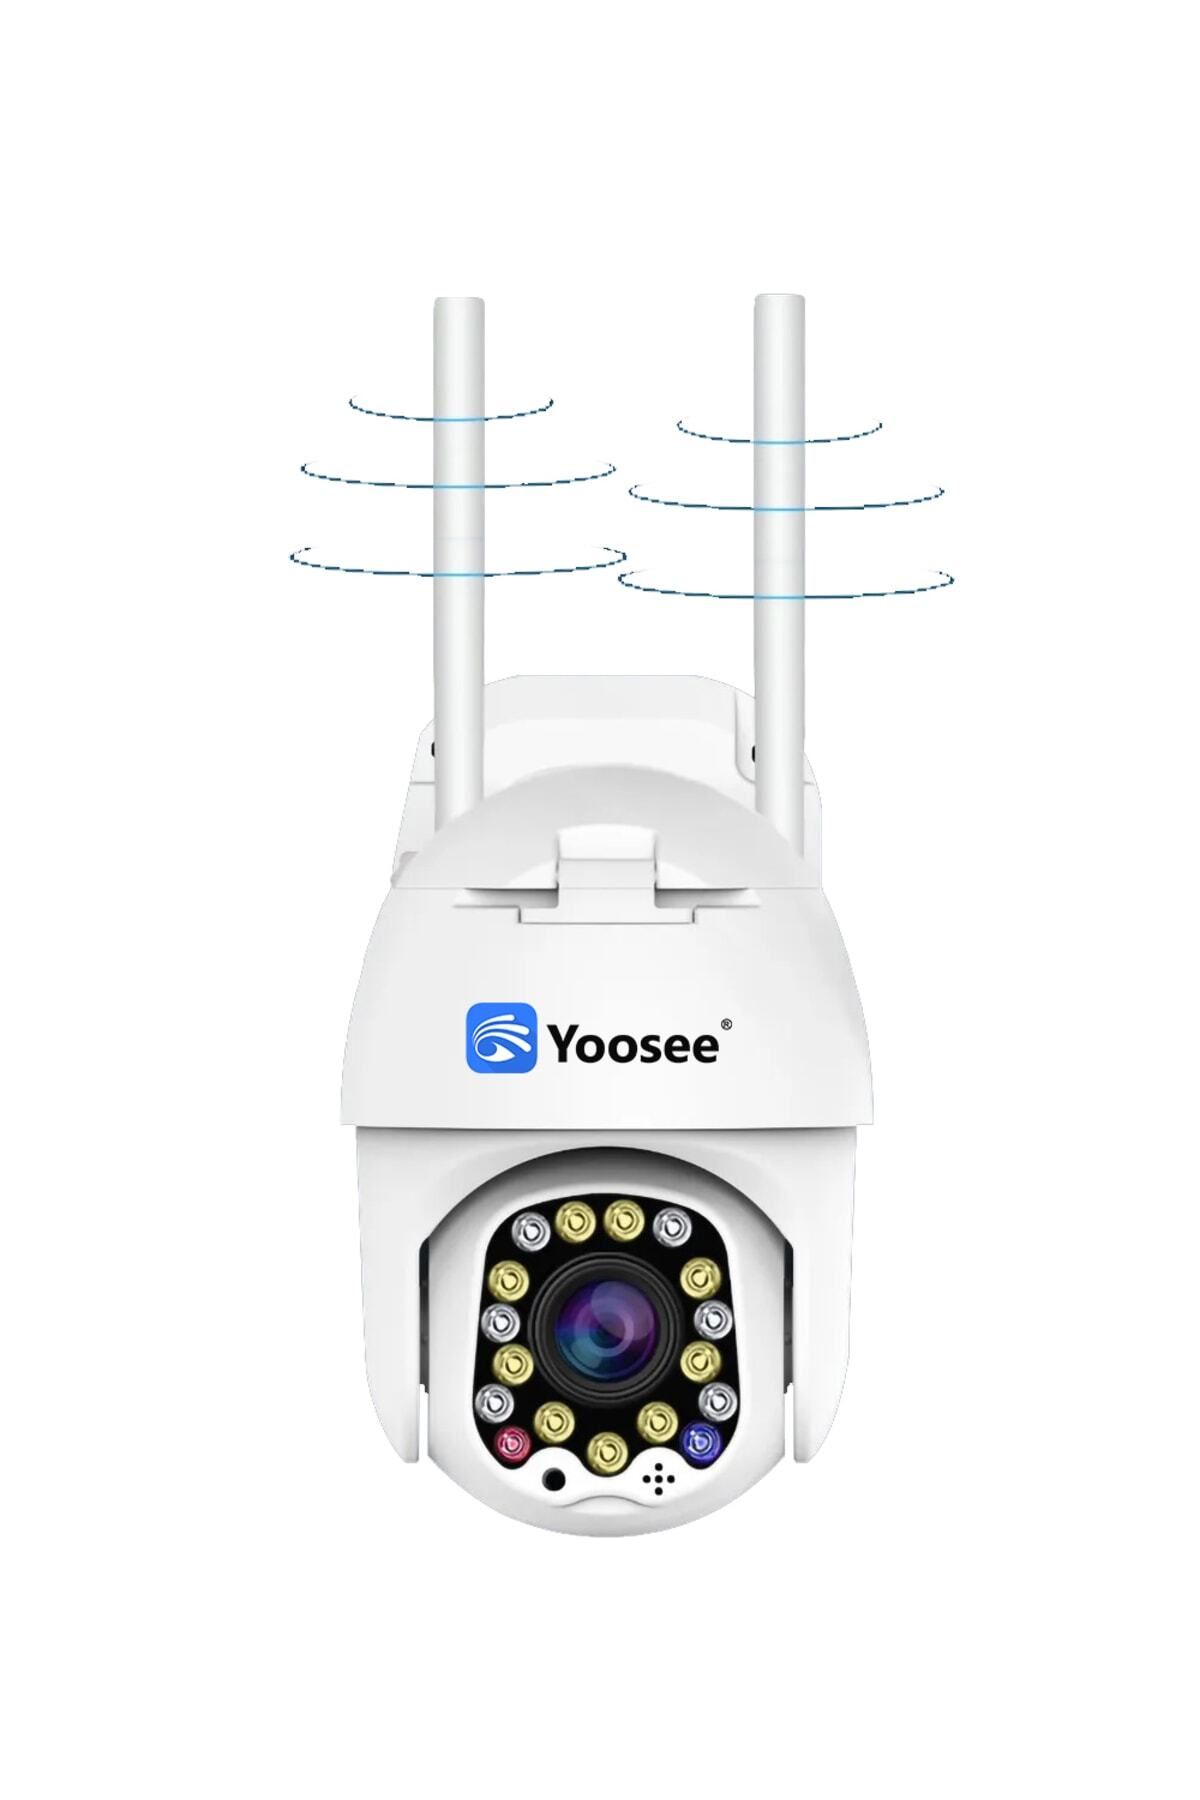 yoosee 1080p Açık Wifi Kamera Ev Güvenlik Için Iki Yönlü Ses Otomatik Izleme